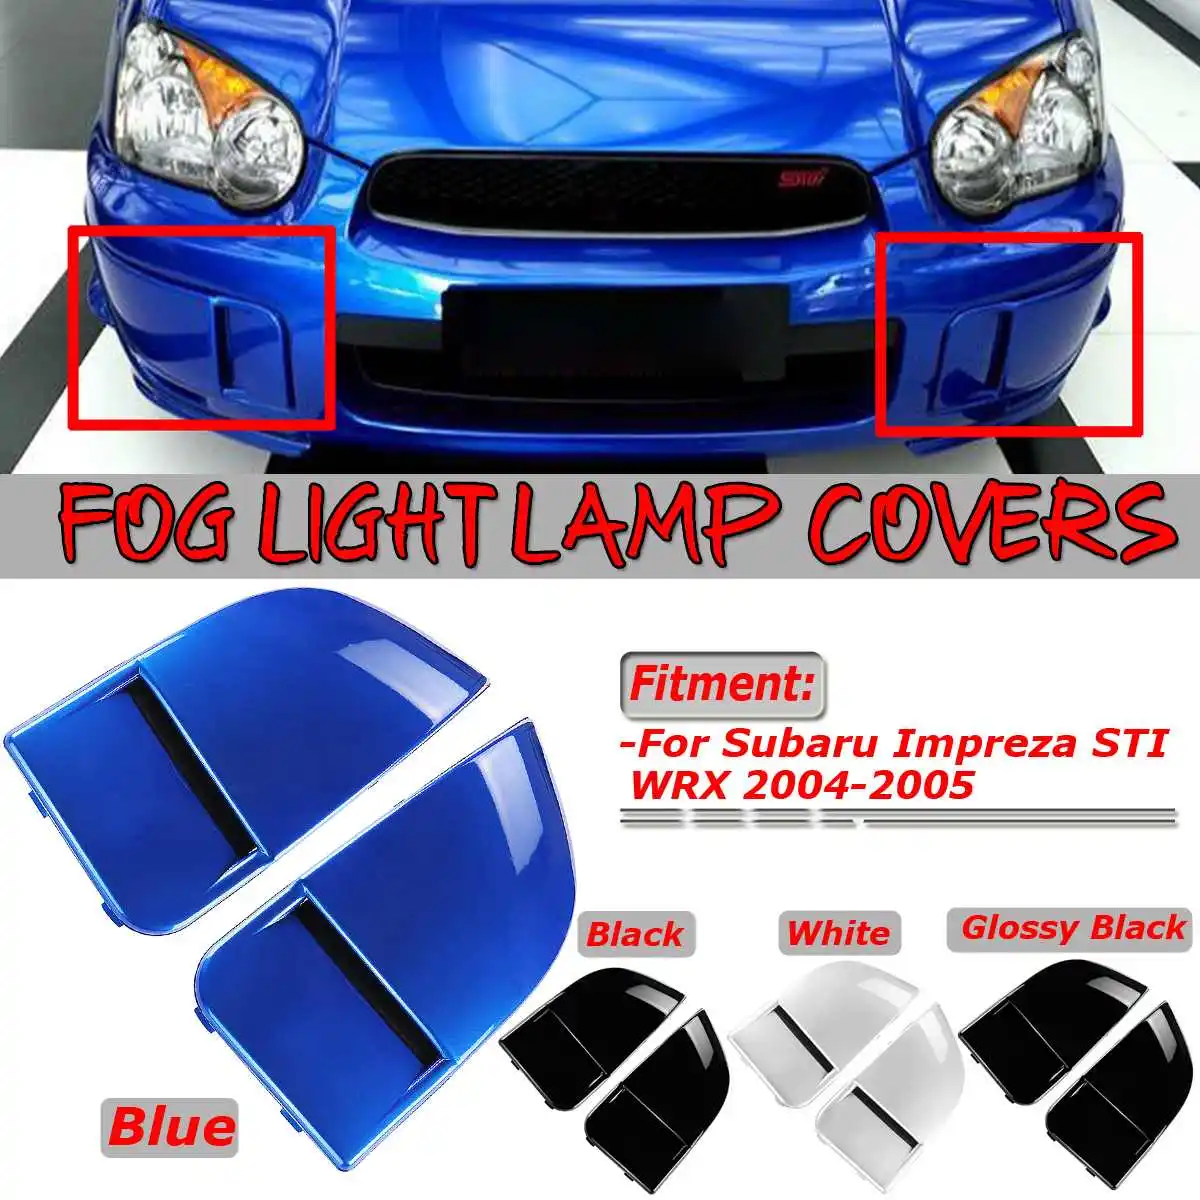 Новая пара автомобиля Передние Противотуманные фары лампы Чехлы бампер облицовочная крышка защита для Subaru Impreza STI WRX 2004-2005